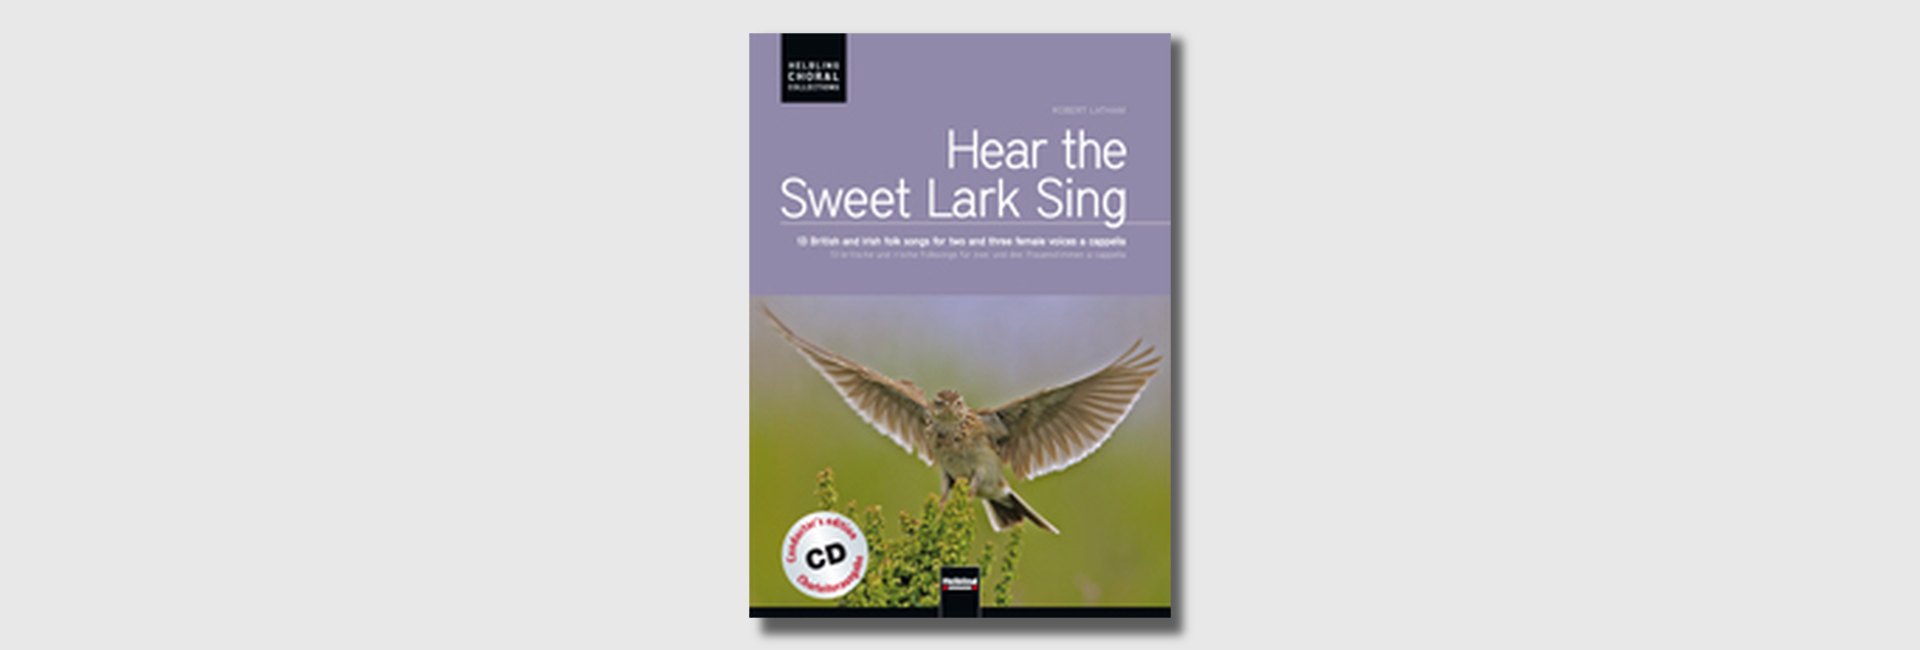 Hear the Sweet Lark Sing